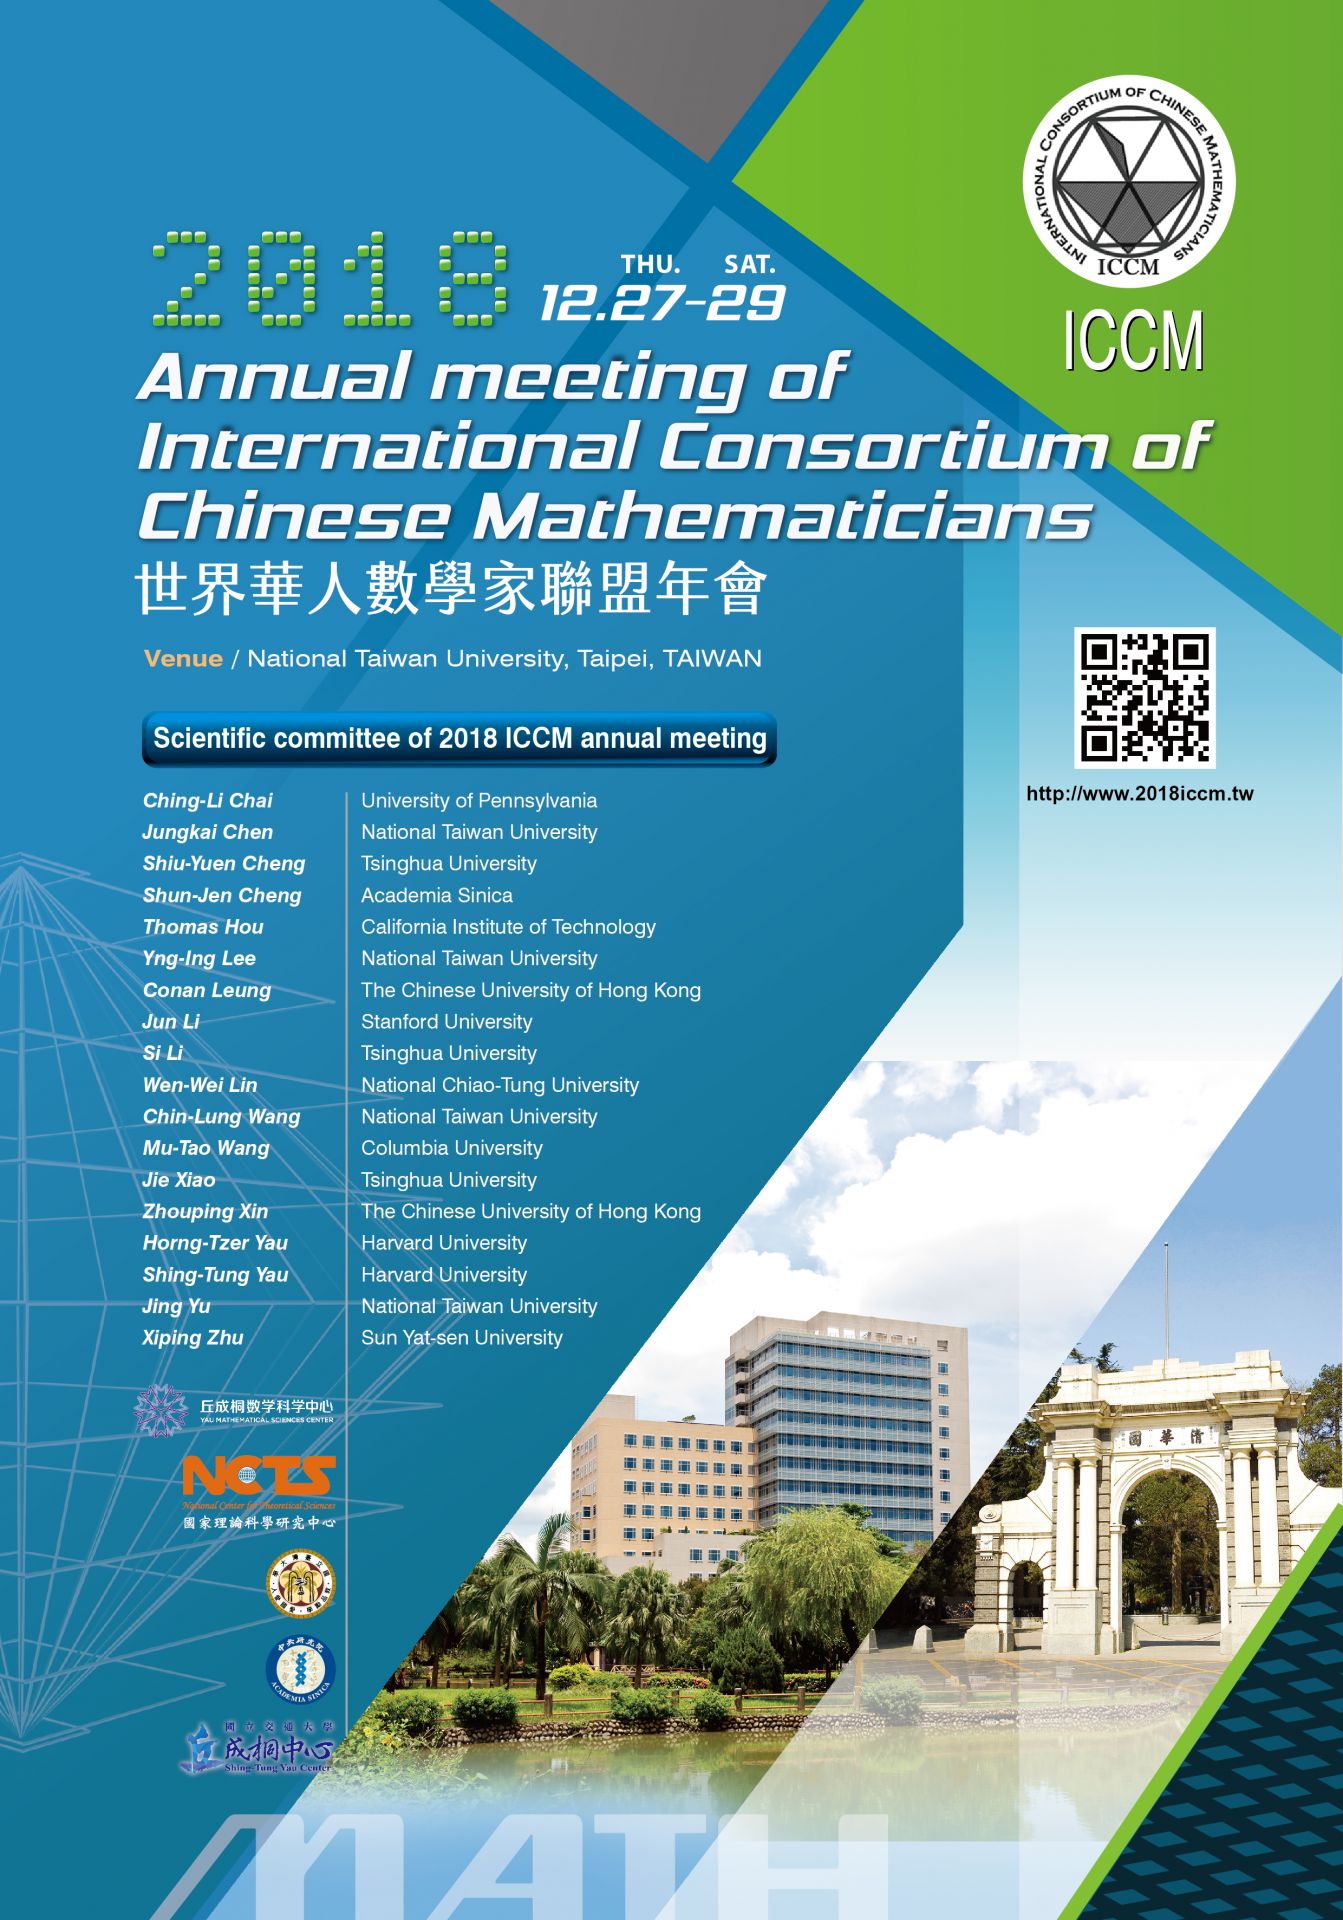 ICCM 世界華人數學家聯盟年會 Dec 27-29